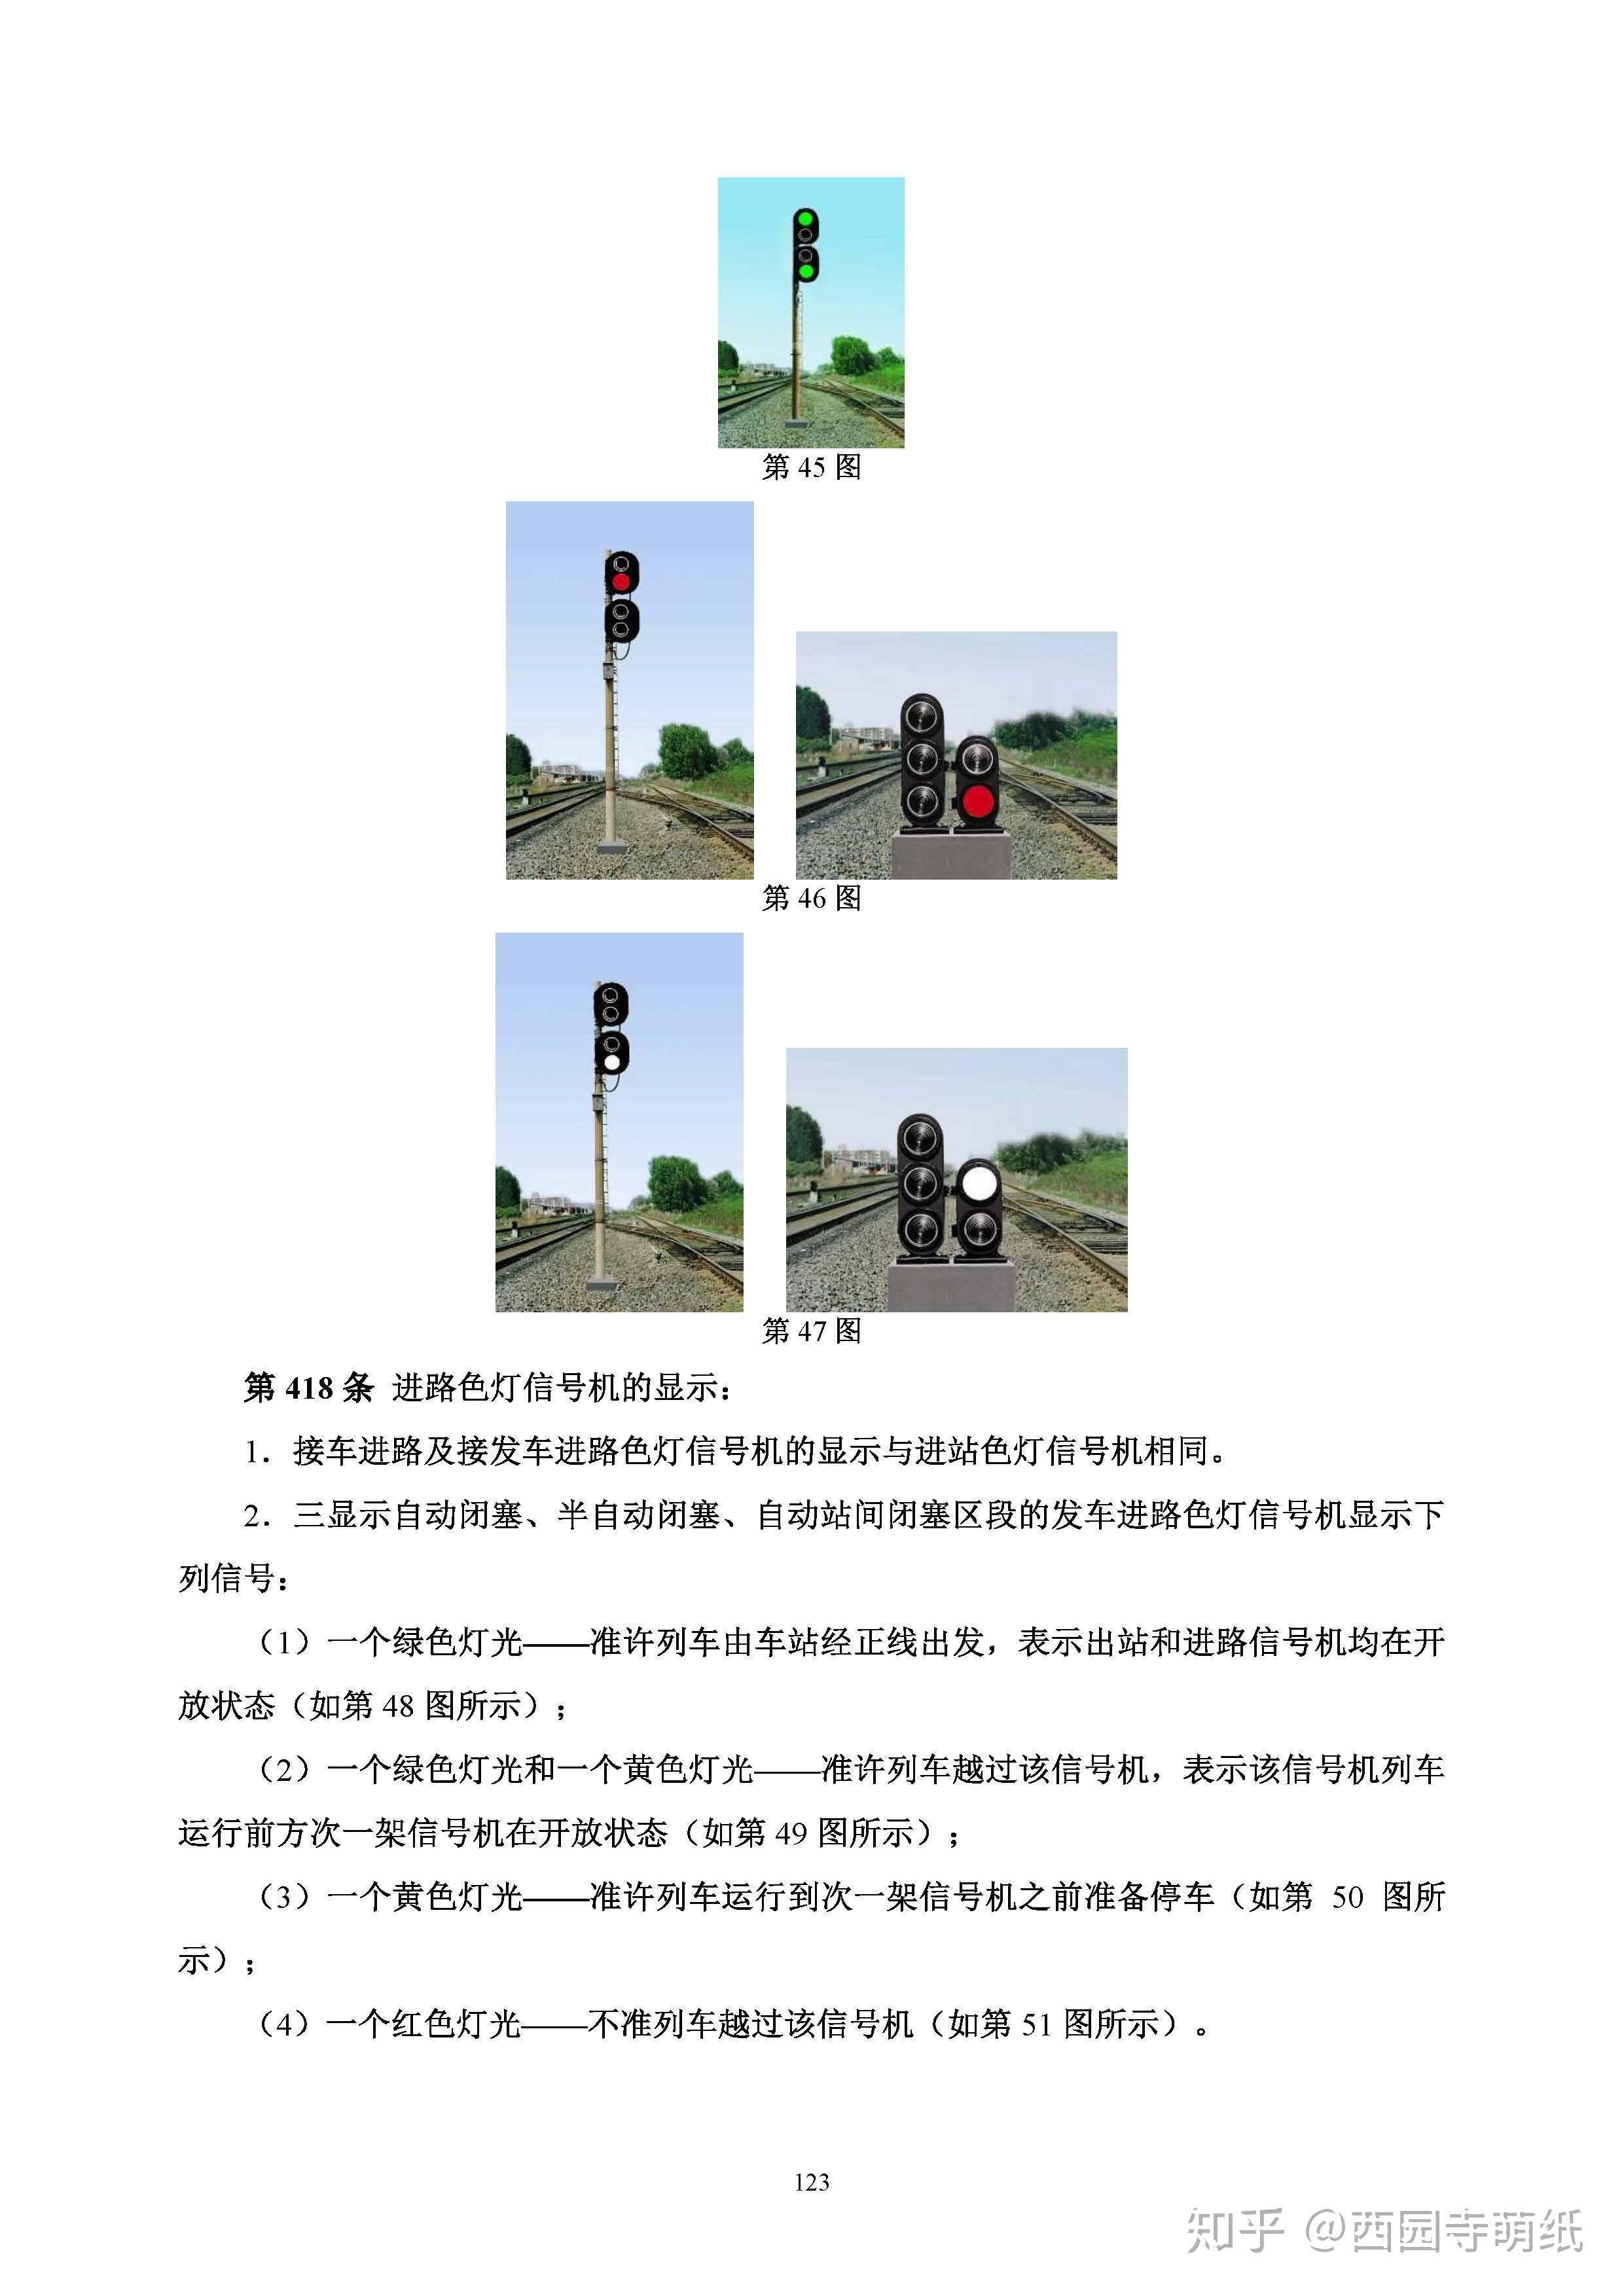 中国铁路信号灯都是什么意思